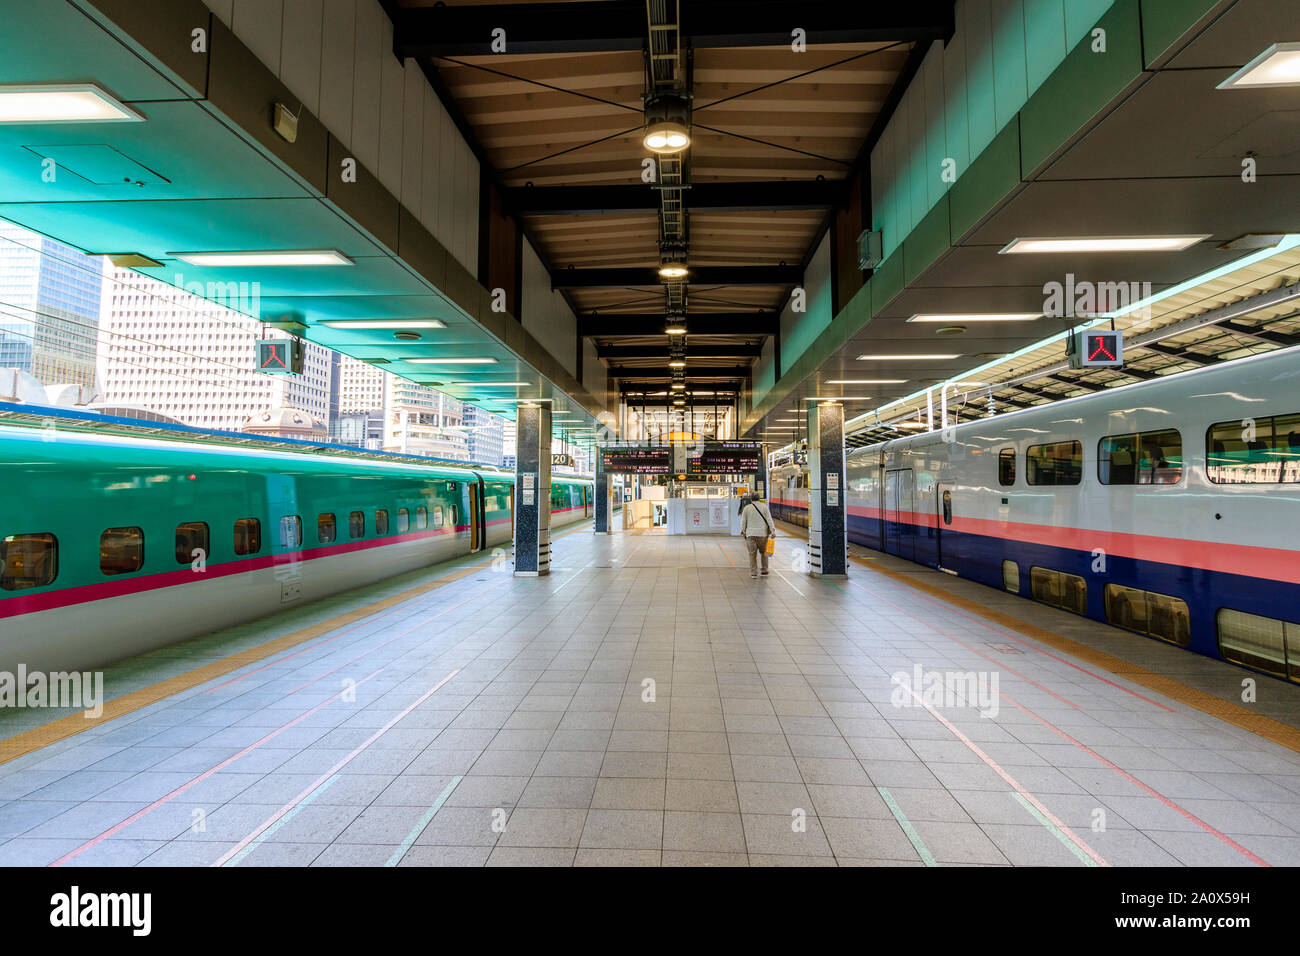 Bahnhof von Tokio. Plattform der E5 Tohoku Shinkansen, Bullet Train, an Plattform 21. und am 22. Eine Double Decker E4 MAX. Plattform hat nur zwei Personen auf. Stockfoto